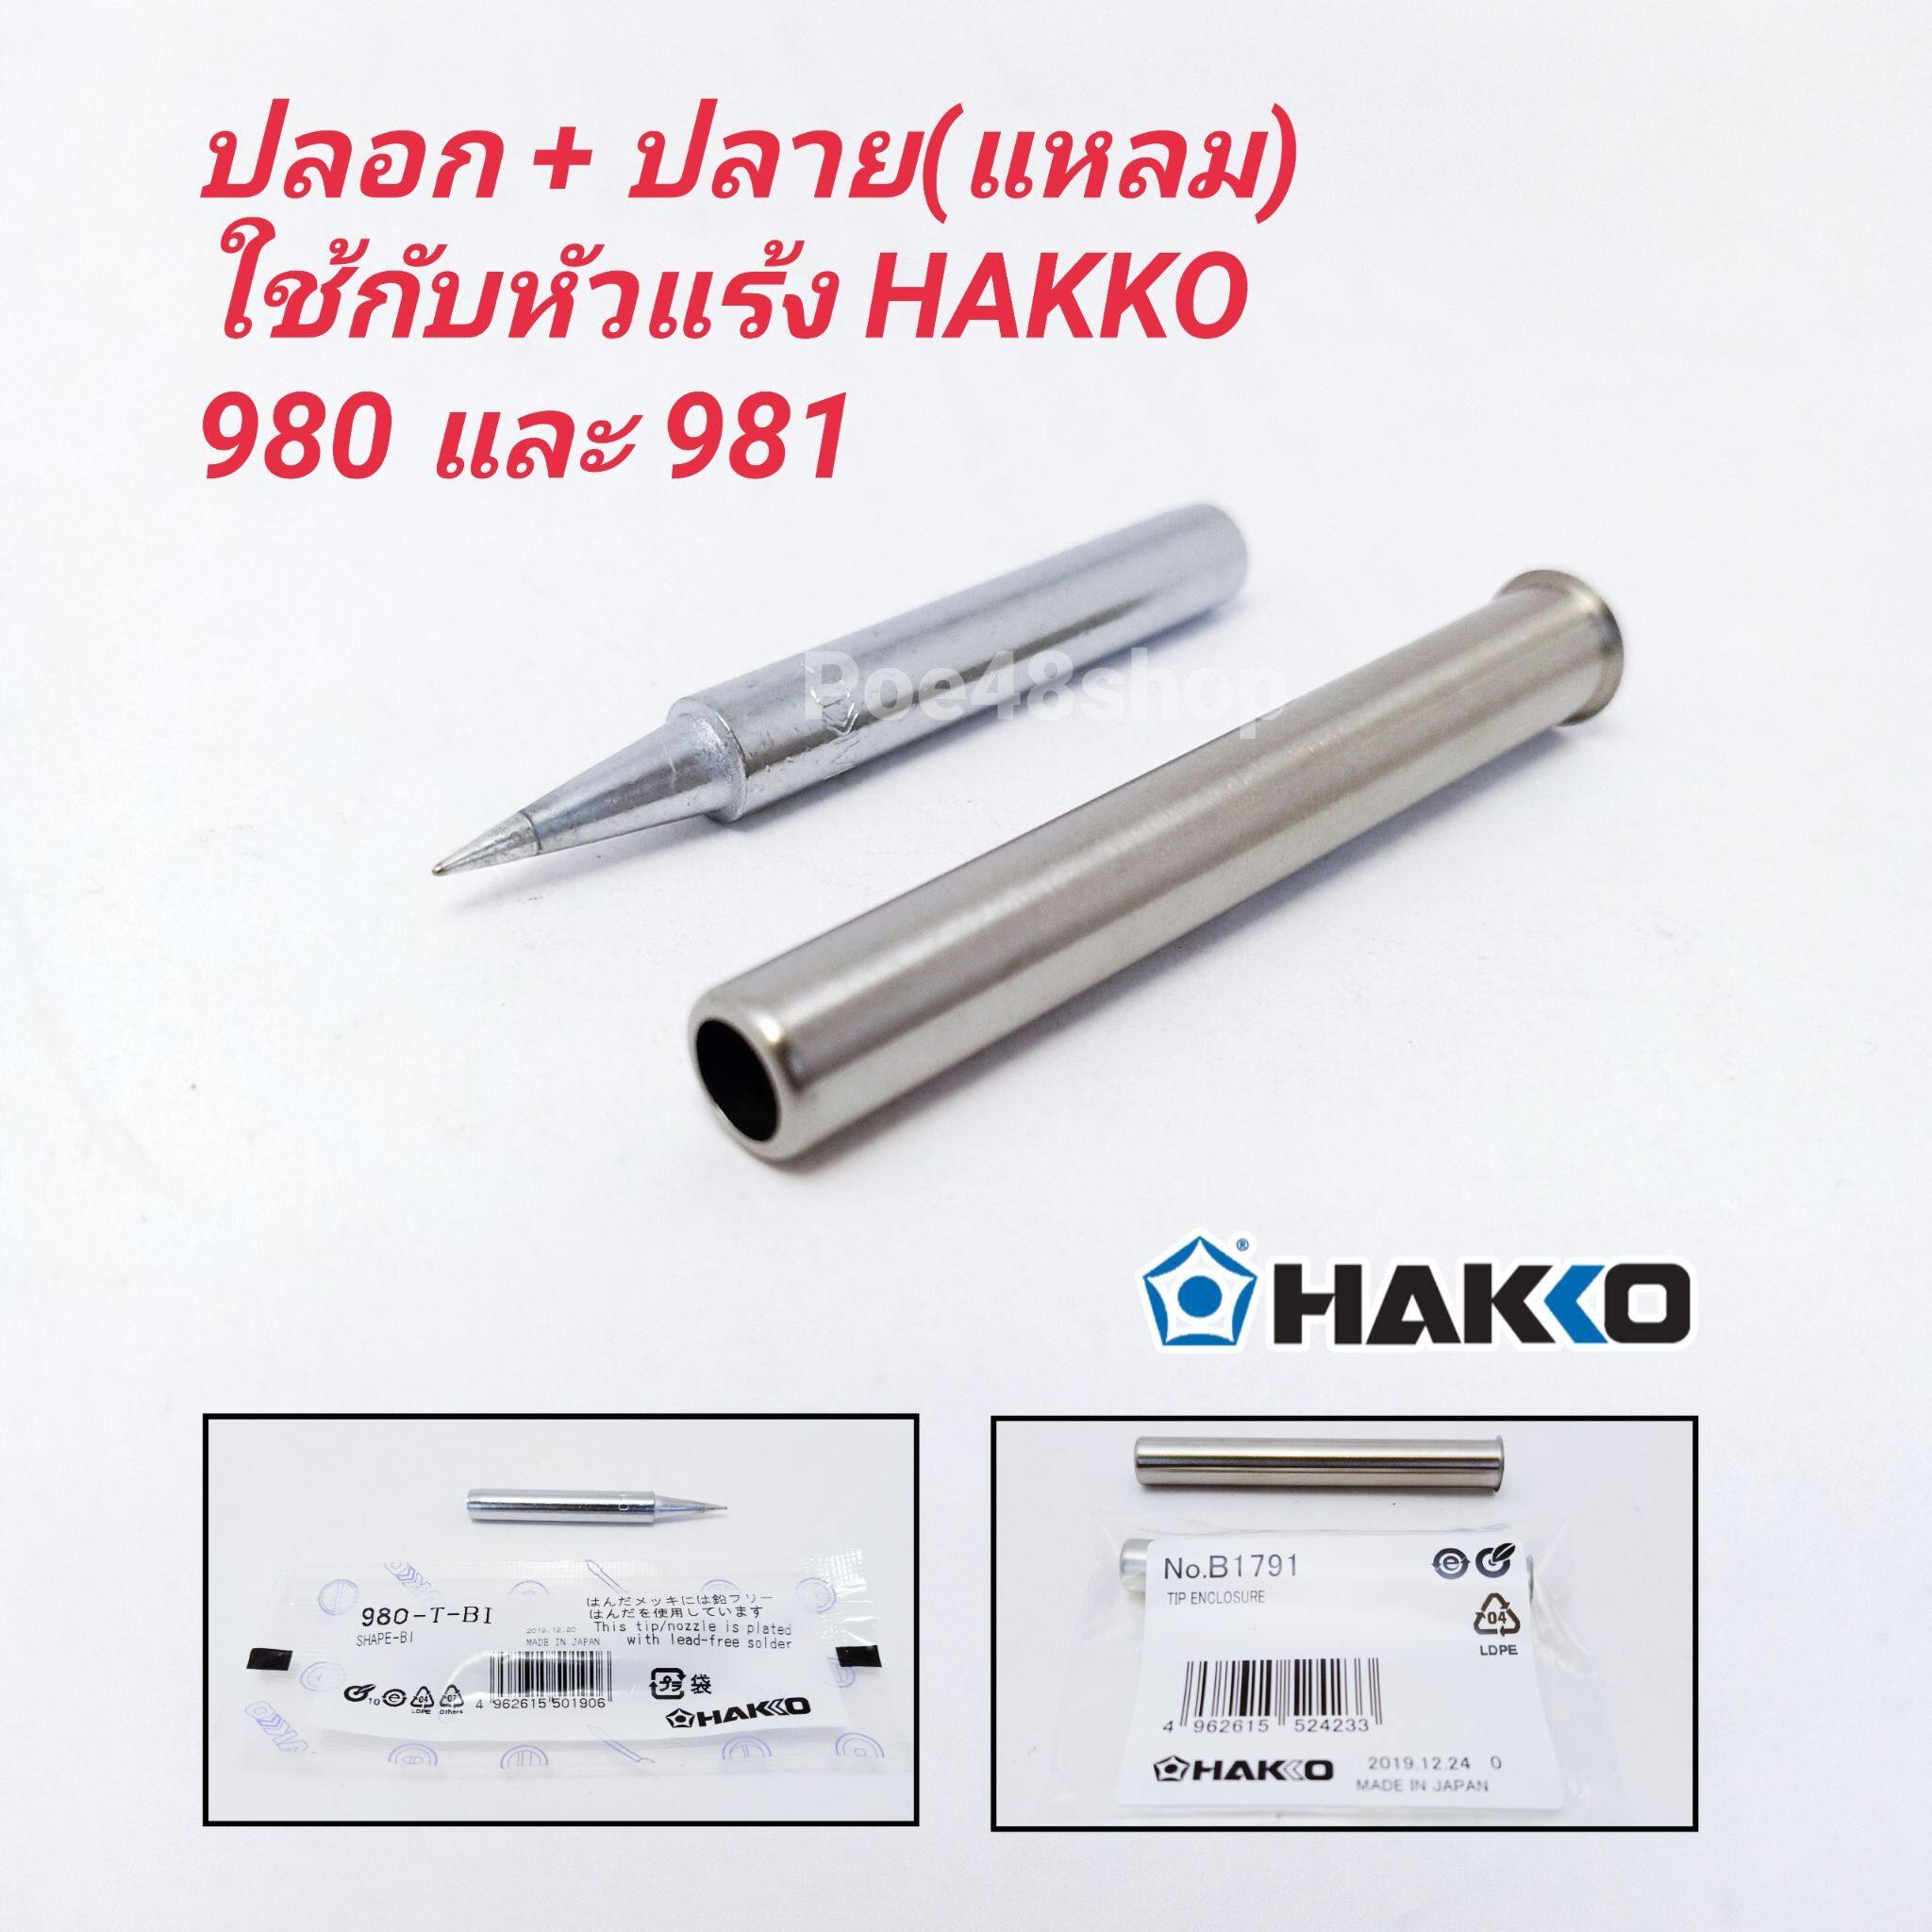 ปลายหัวแร้ง และปลอกกันความร้อน HAKKO รุ่น 980-T-BI (ปลายแหลม)ใช้กับหัวแร้งรุ่น 980 และ 981 ของแท้ 100% (Made in Japan)